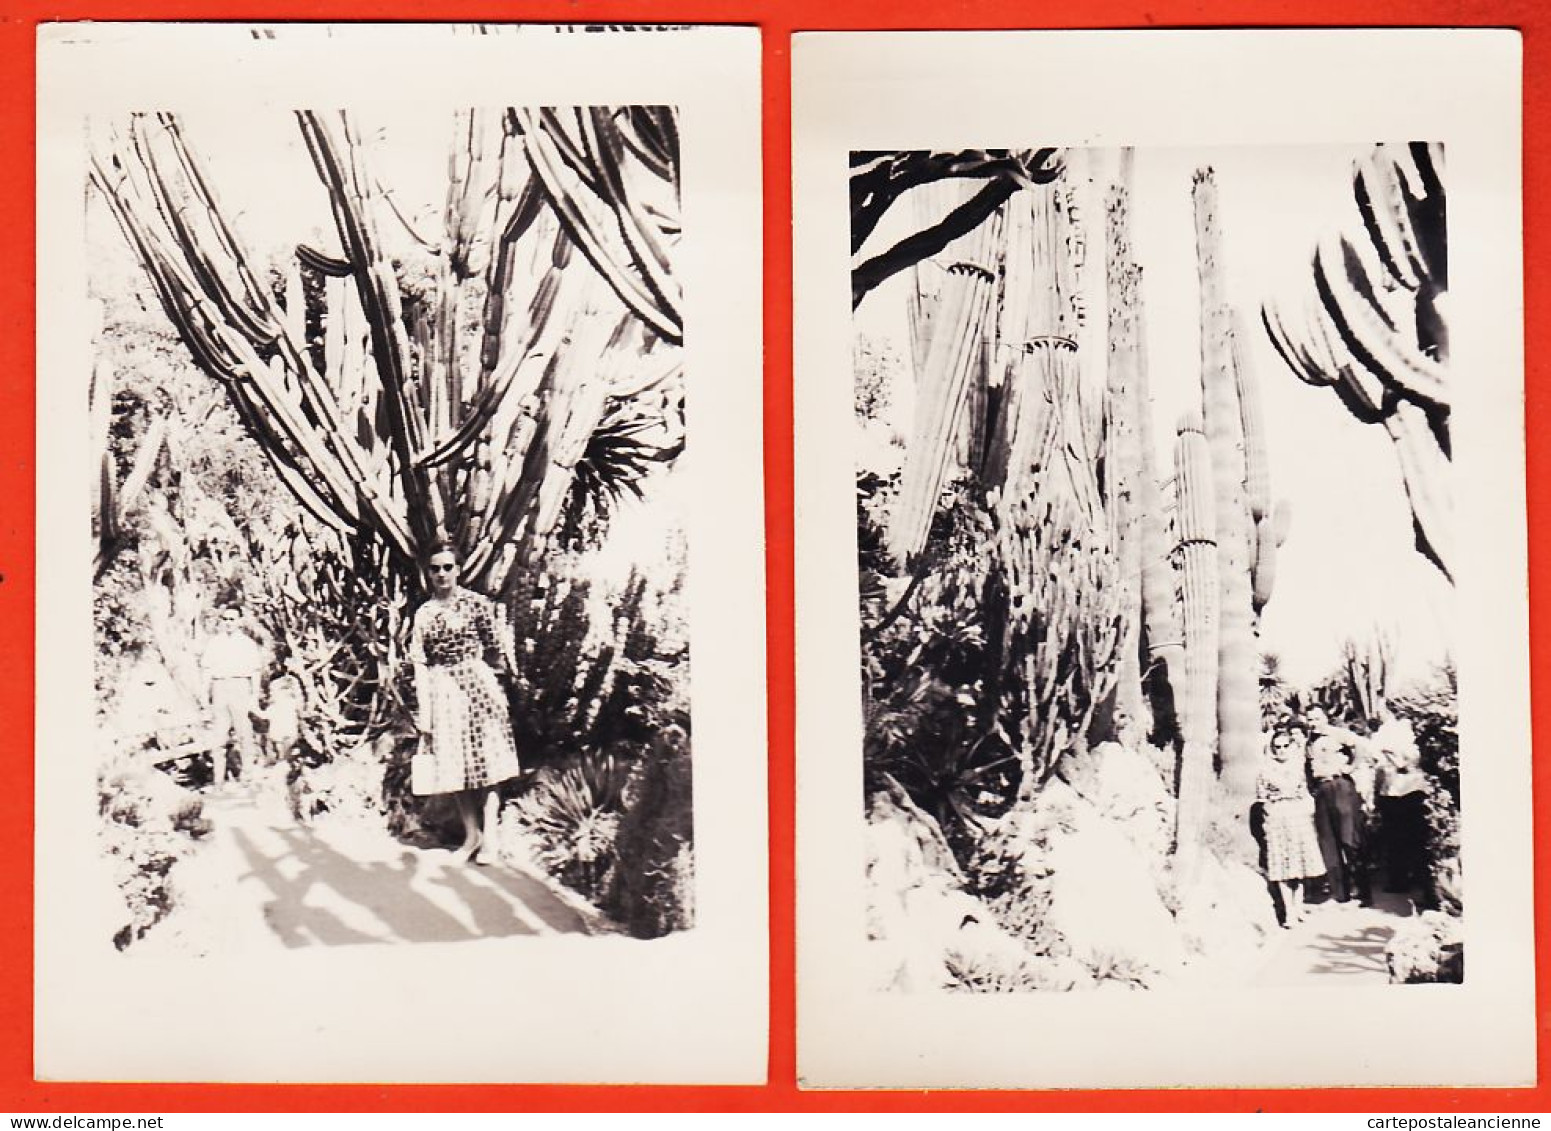 27273 /⭐ ◉ 2 Photographies  ◉ MONACO Allée Bordée Cactus Cierge Jardin Exotique 1950s  ◉ Photographies 9x13cm - Jardin Exotique